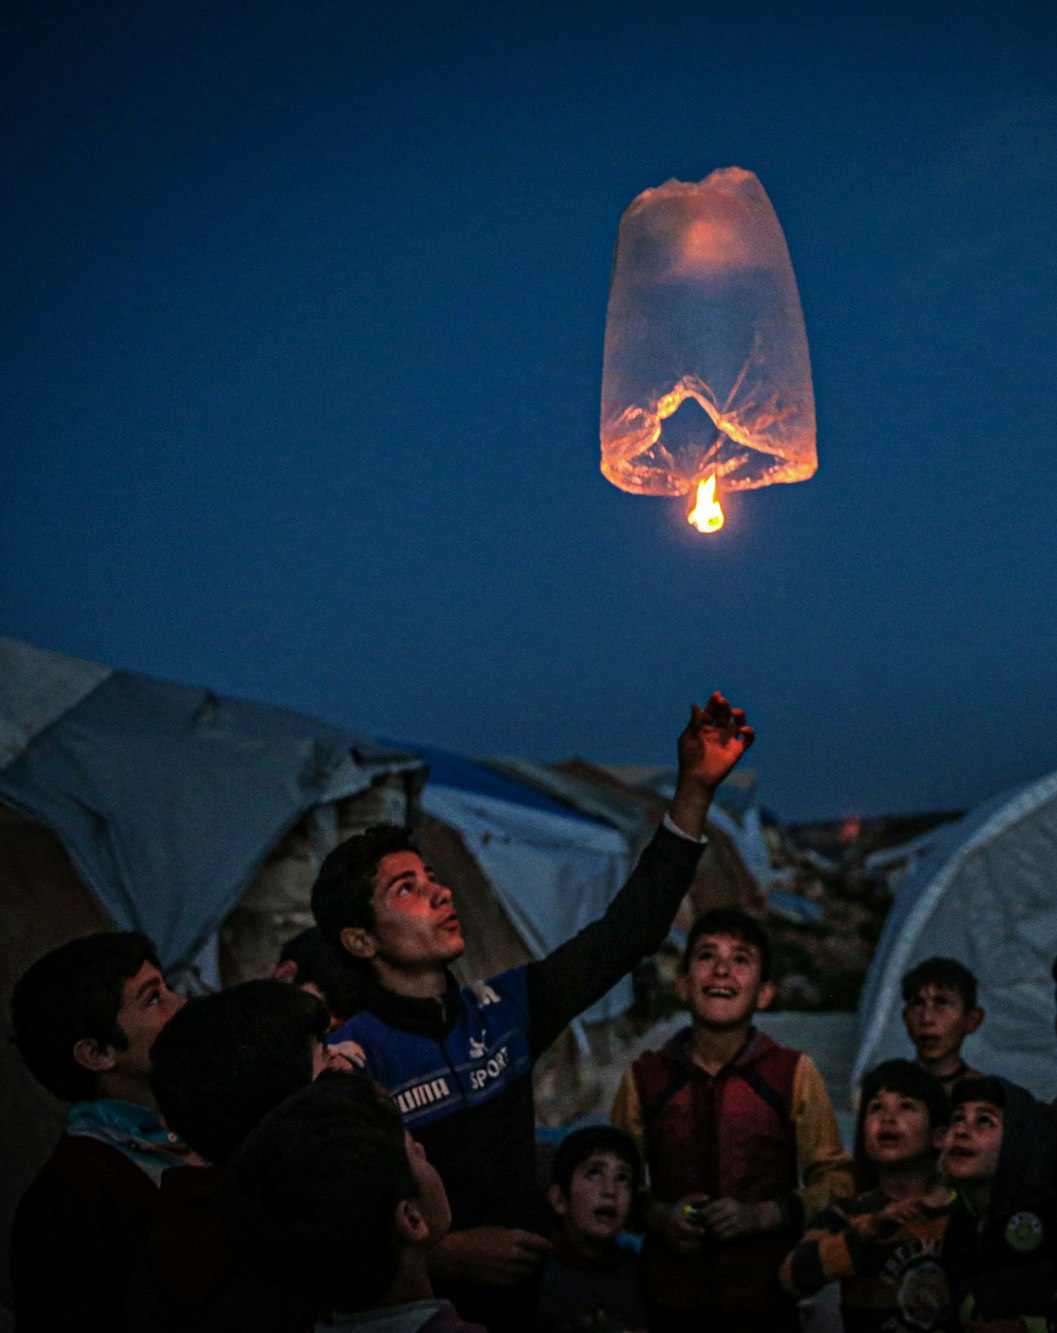 Children lighting a floating lamp